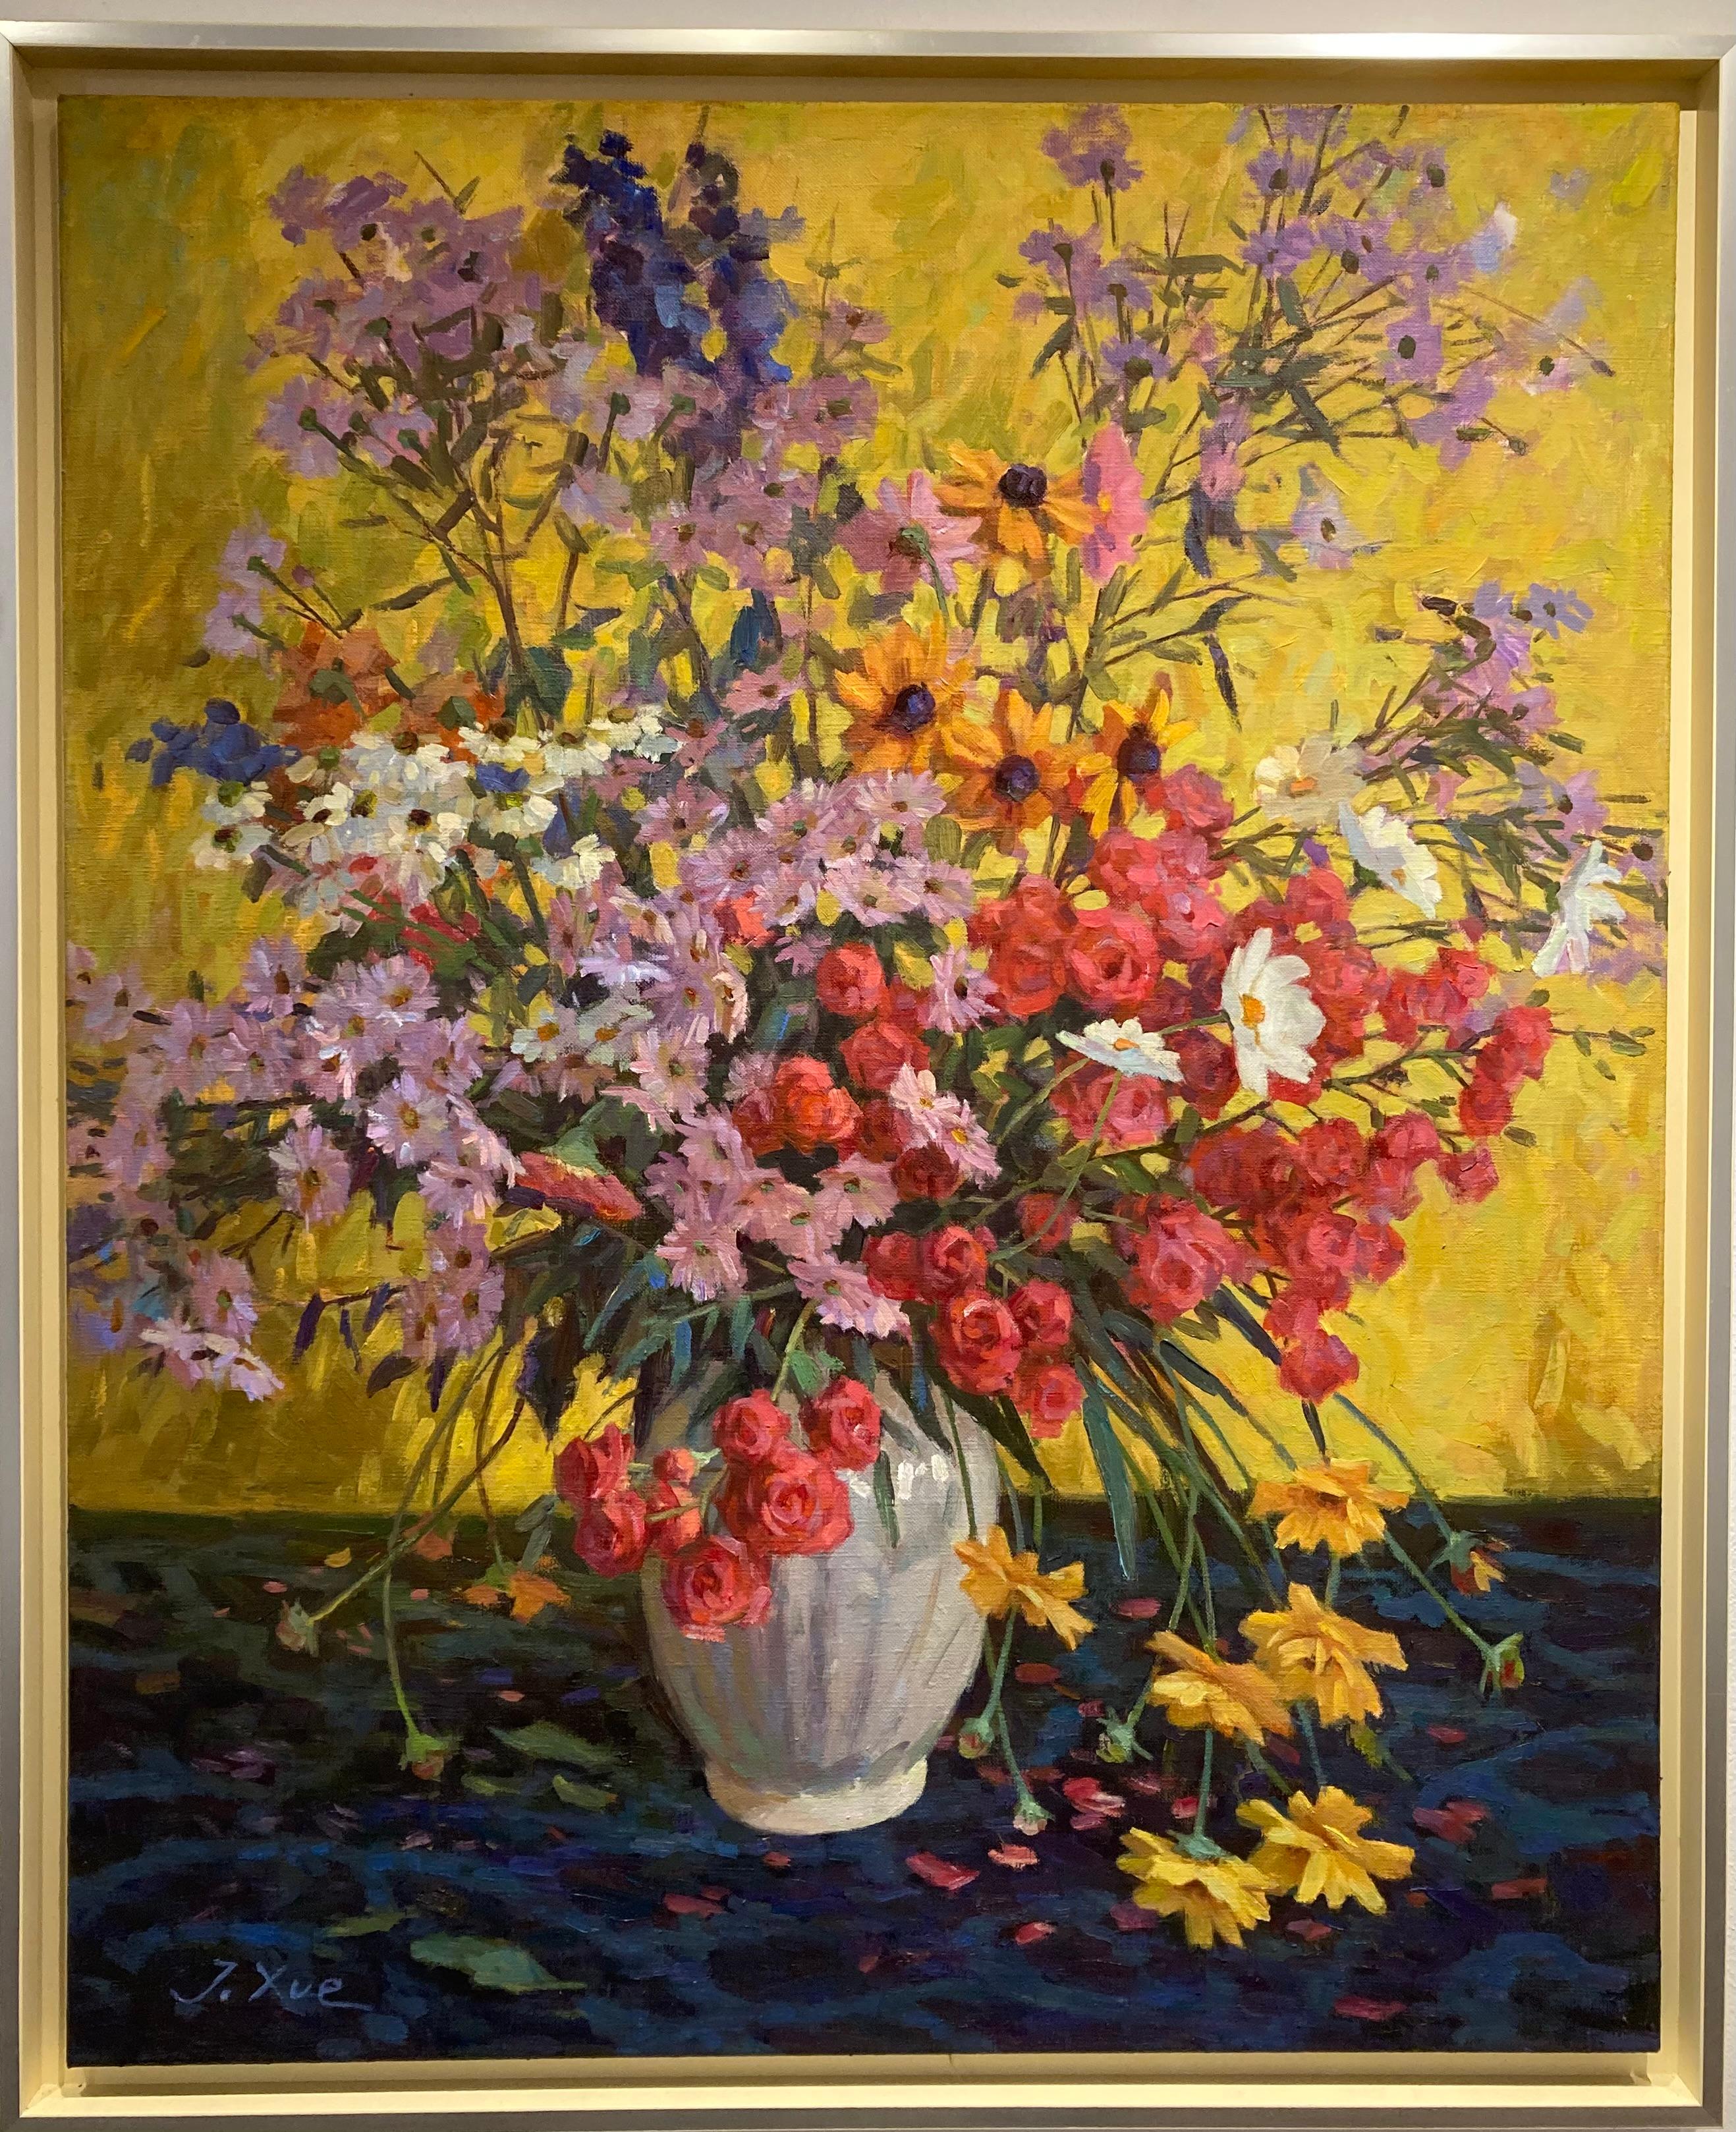 Figurative Painting Juane Xue - Peinture à l'huile sur toile - Bouquet d'automne - Fleurs - Couleurs en stock